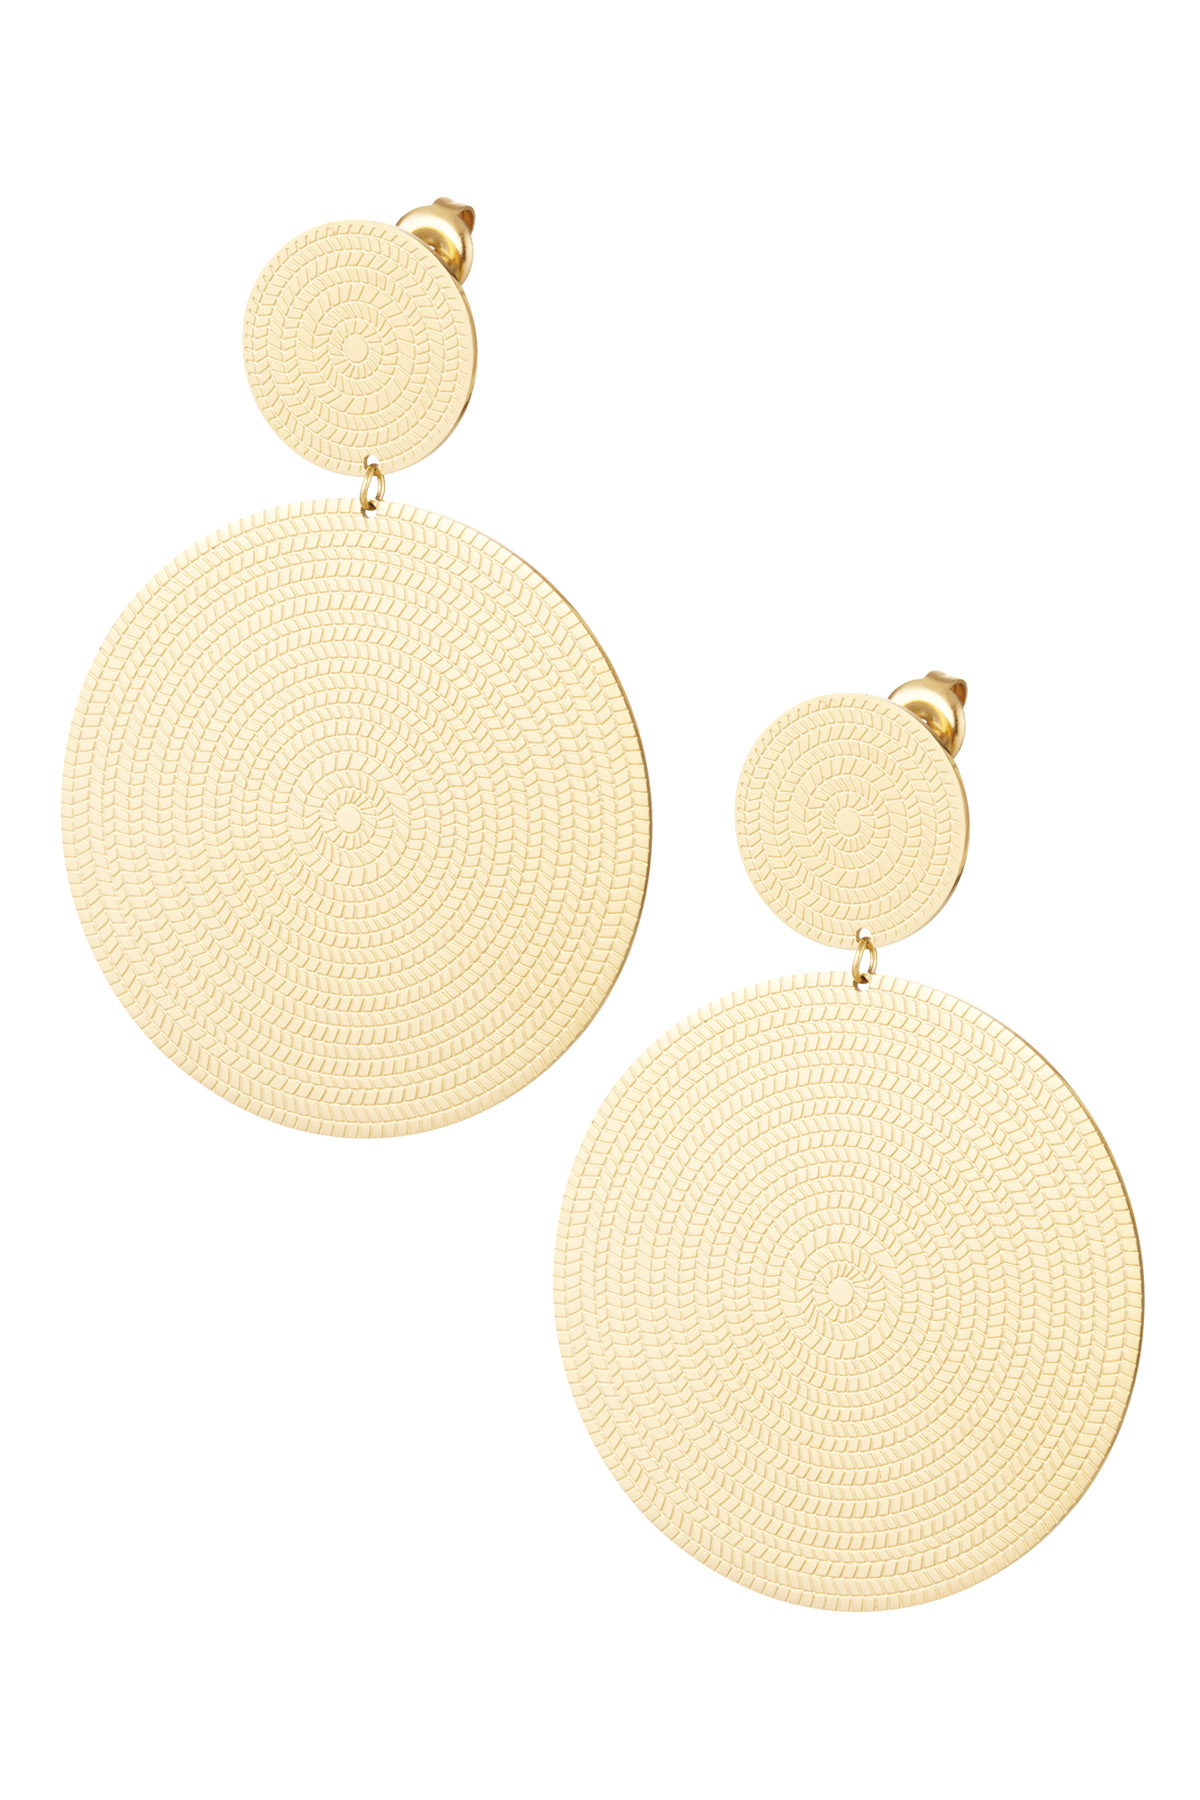 Earrings large hoops - gold